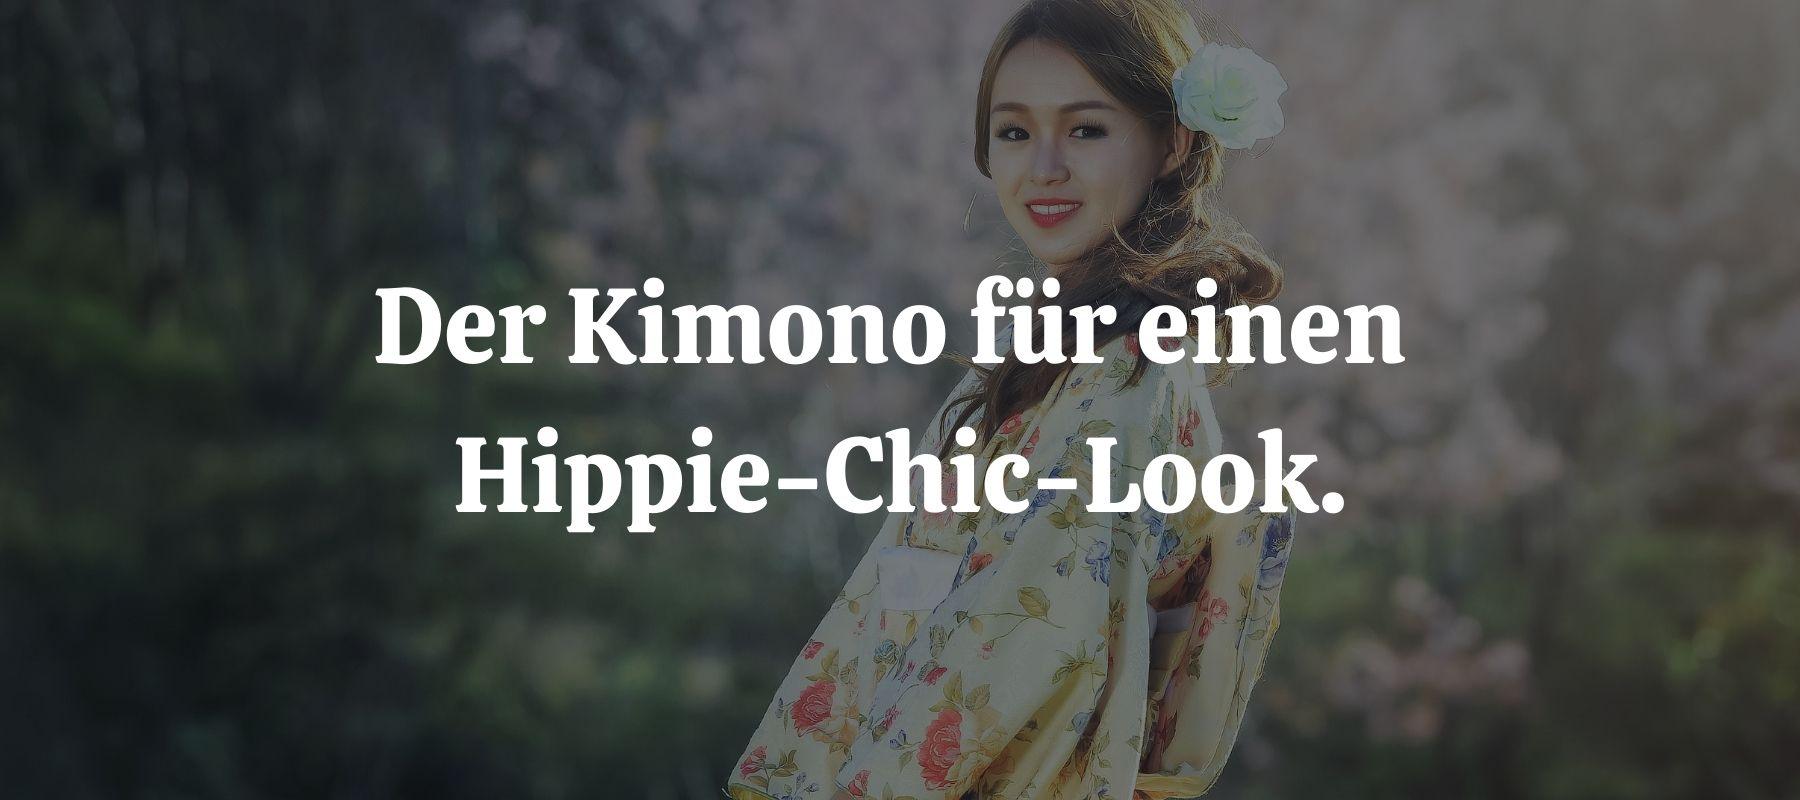 Mix Your Style  Der Kimono für einen Hippie-Chic-Look.